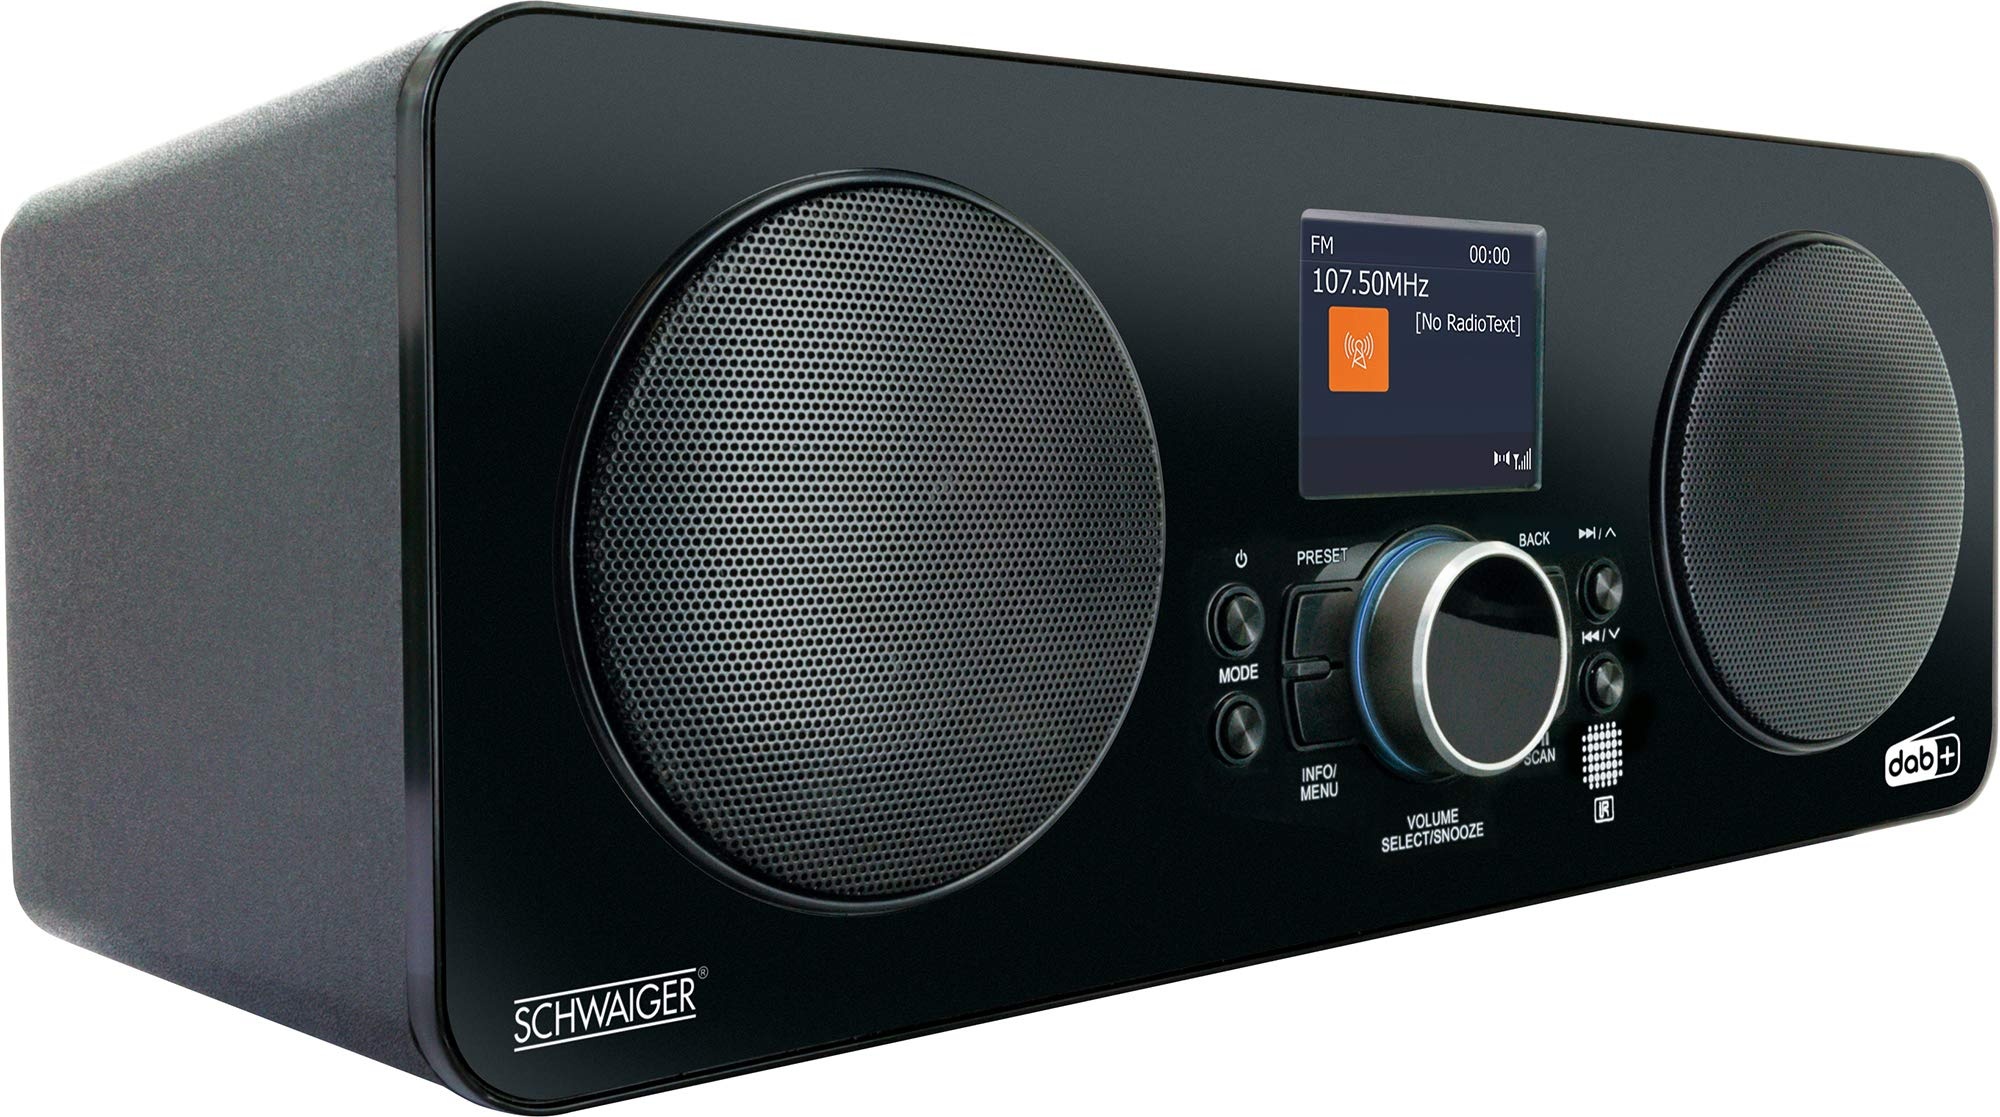 SCHWAIGER DAB650 513 Digitales Radio DAB+ FM WLAN Wecker LCD Farbdisplay Bluetooth Stereo 2 HiFi Lautsprecher Stabantenne Netz- und Batteriebetrieb schwarz